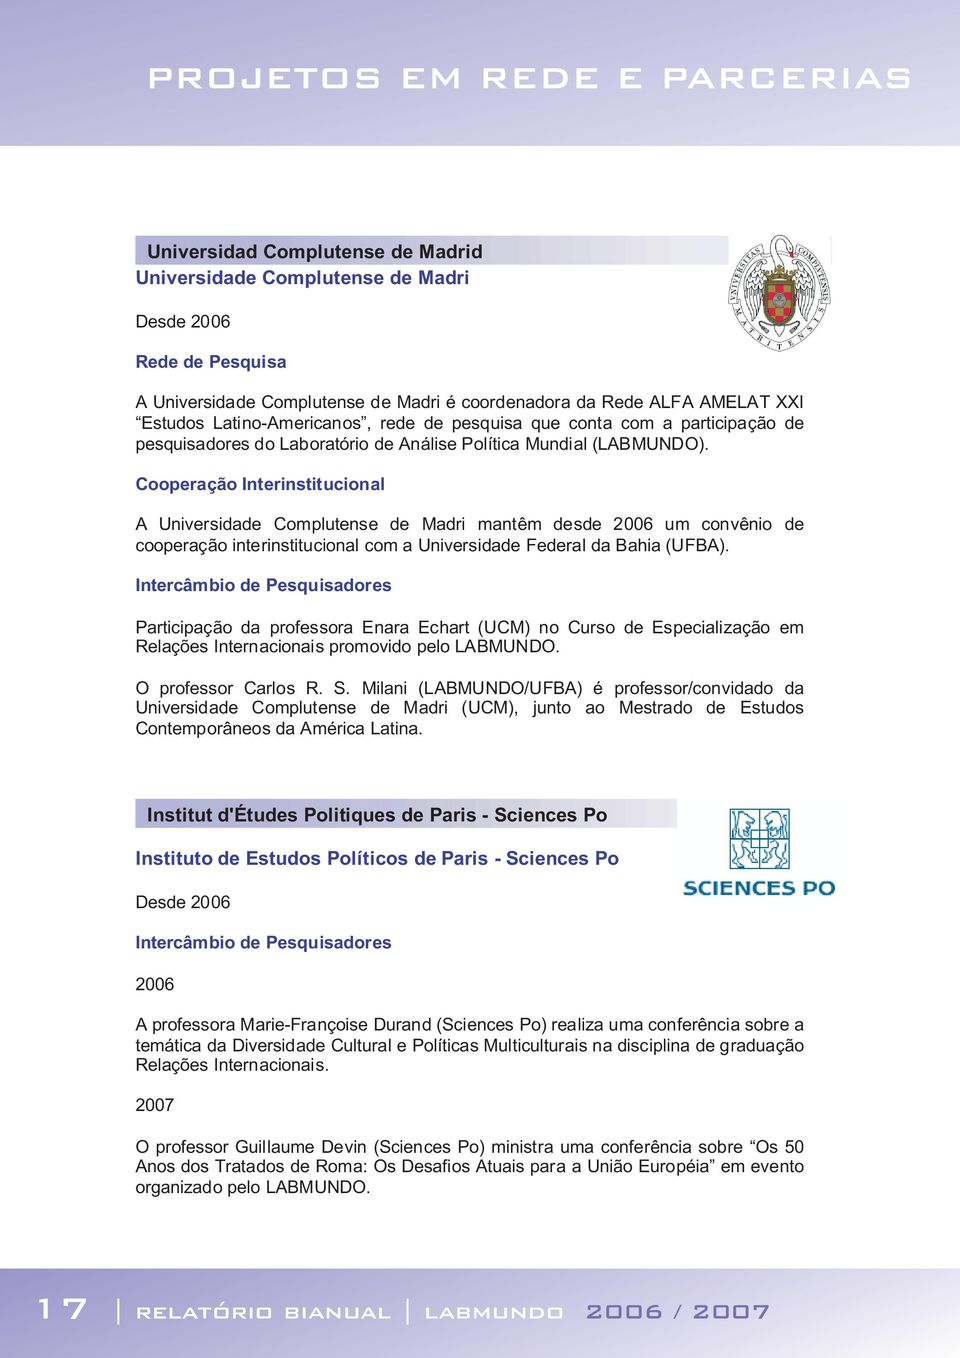 Cooperação Interinstitucional A Universidade Complutense de Madri mantêm desde 2006 um convênio de cooperação interinstitucional com a Universidade Federal da Bahia (UFBA).